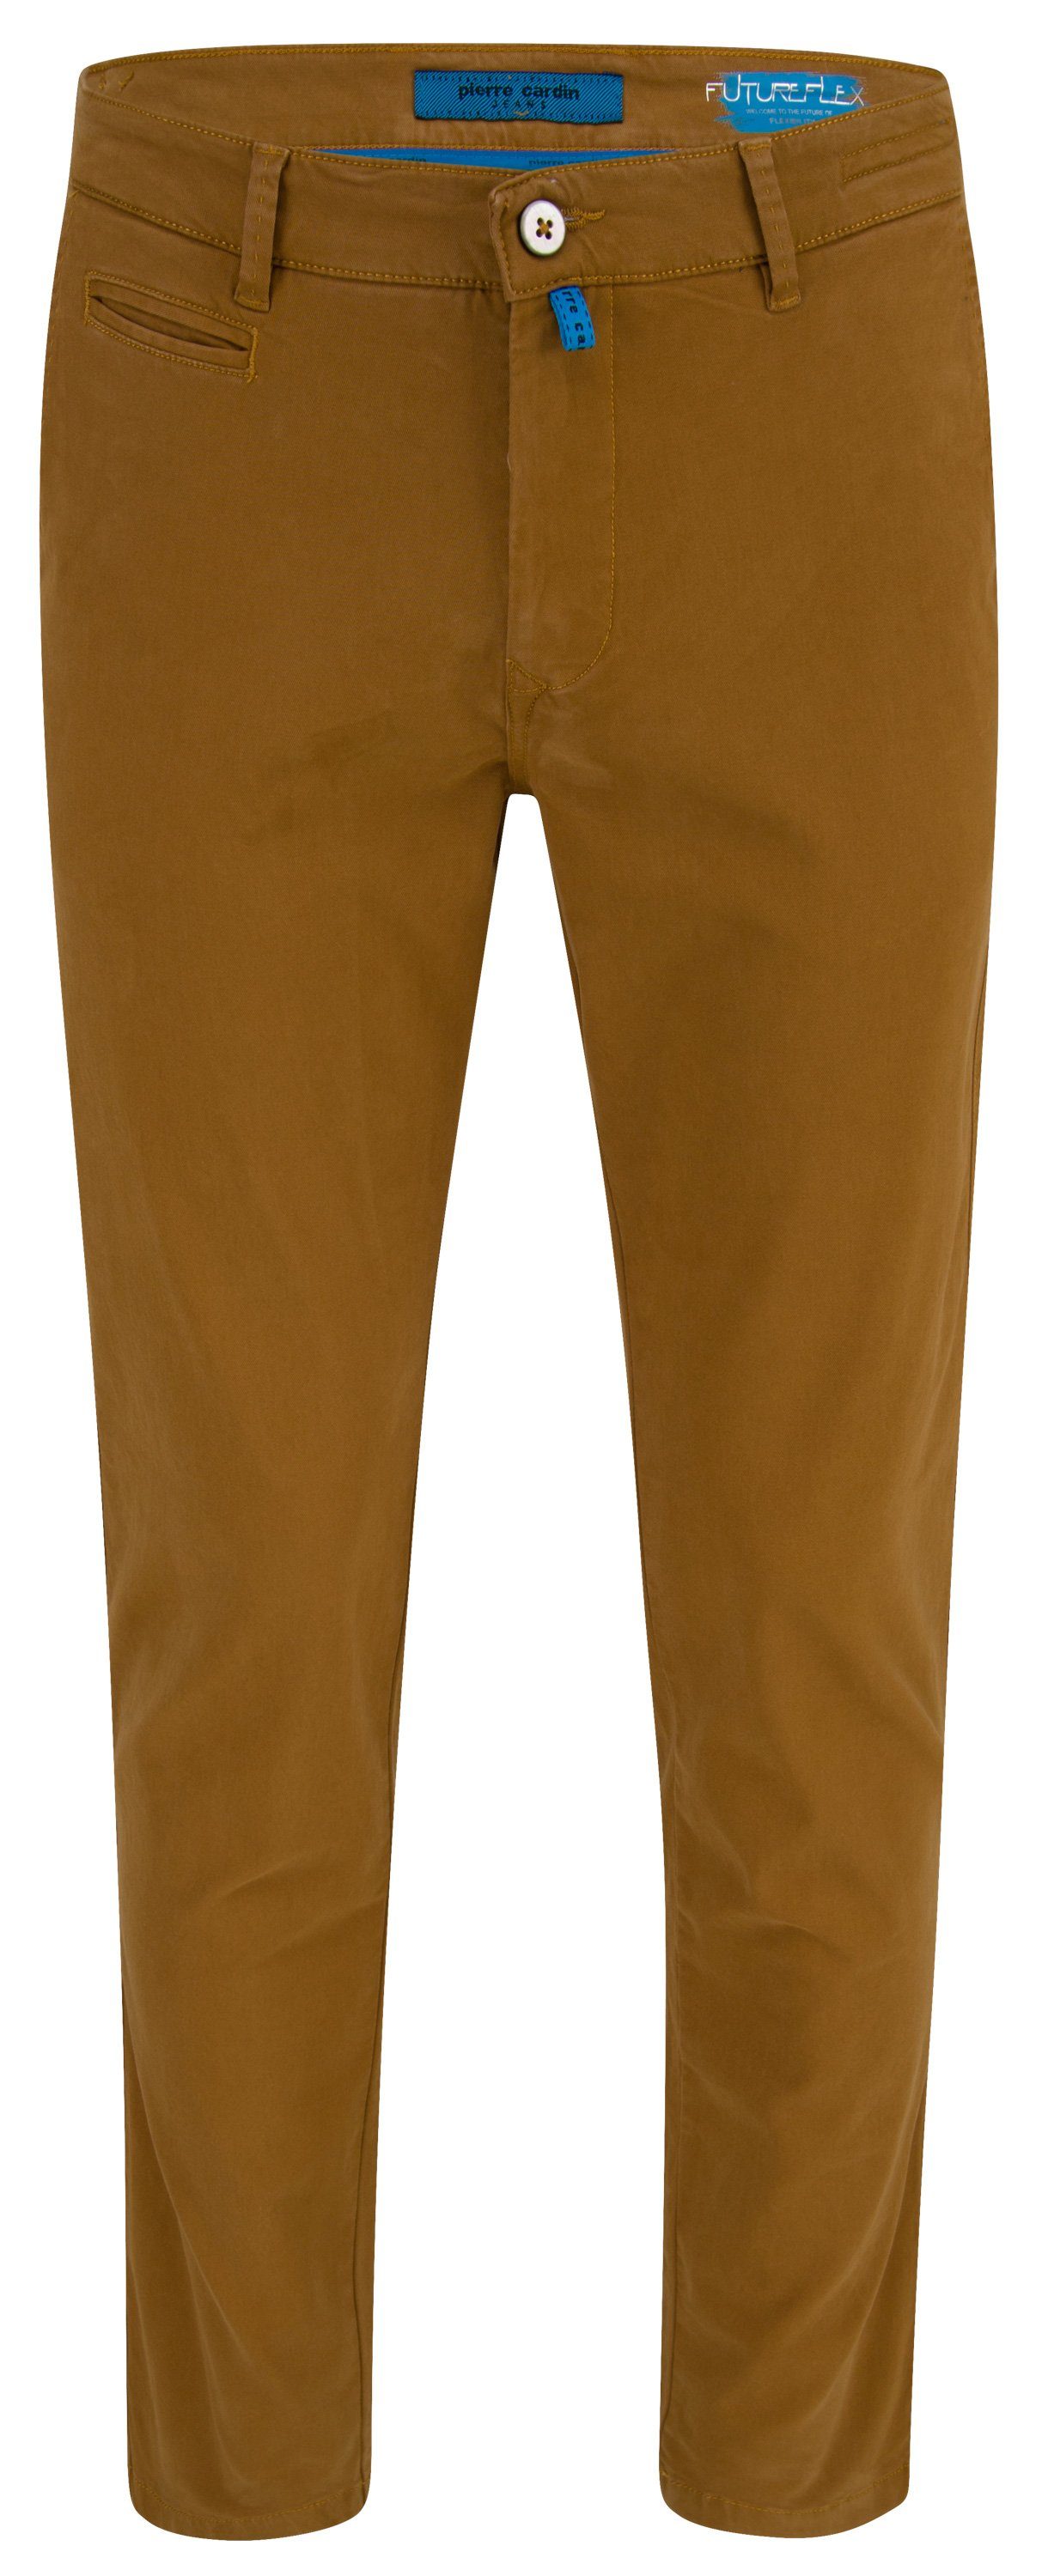 Pierre Cardin 5-Pocket-Jeans PIERRE CARDIN FUTUREFLEX LYON ocher brown 33757 2233.45 | Jeans